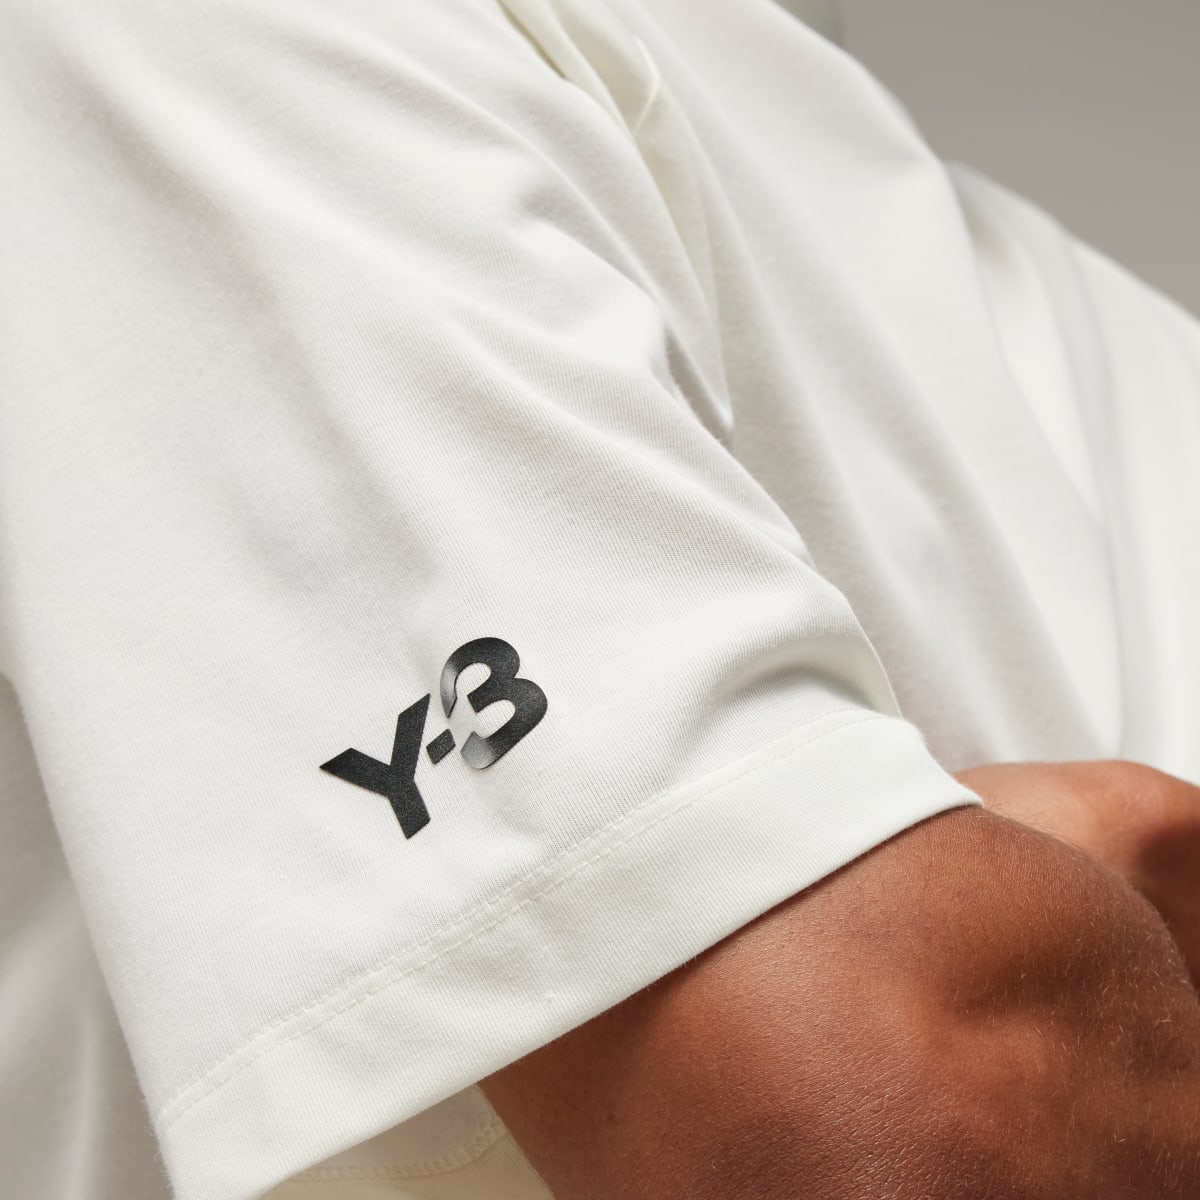 Adidas Y-3 3-Stripes Short Sleeve T-Shirt. 8